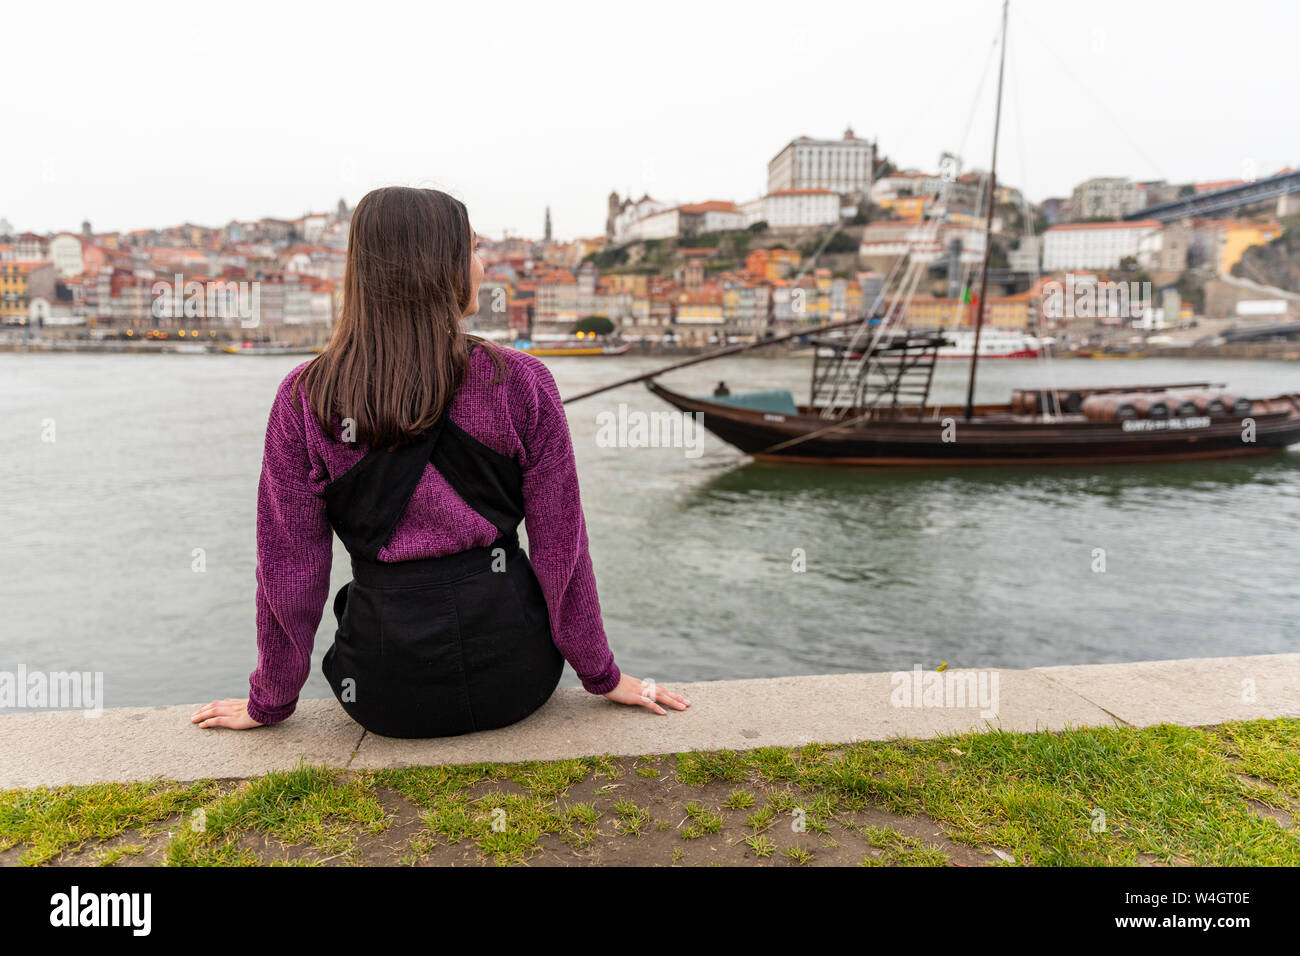 Vue arrière de jeune femme assise en face de la rivière Douro, Porto, Portugal Banque D'Images